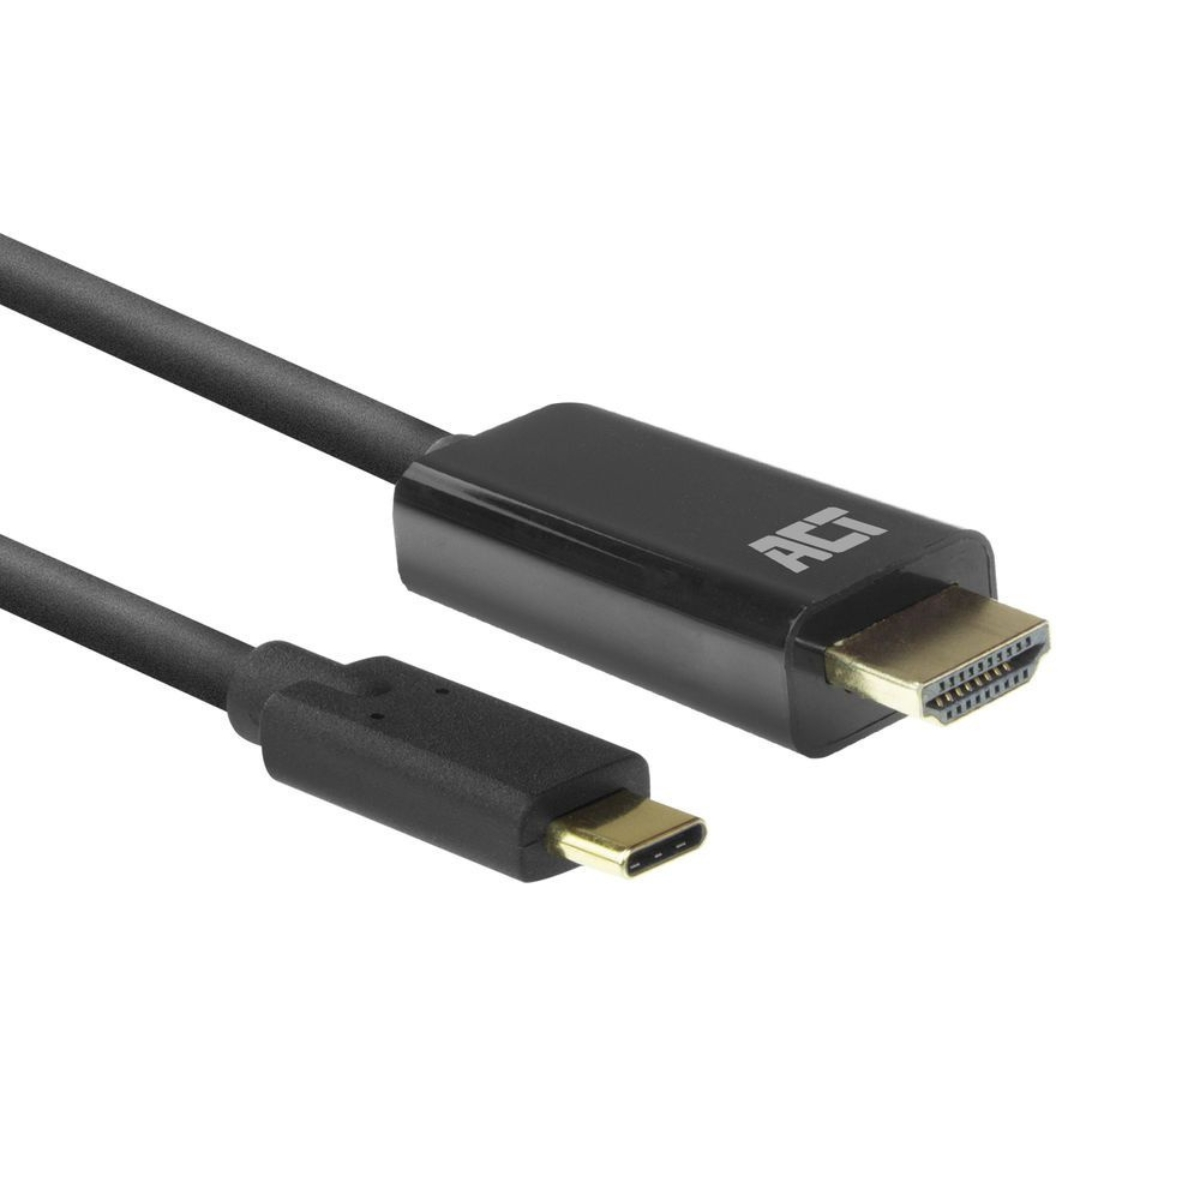 ACT Kabel AC7315 USB